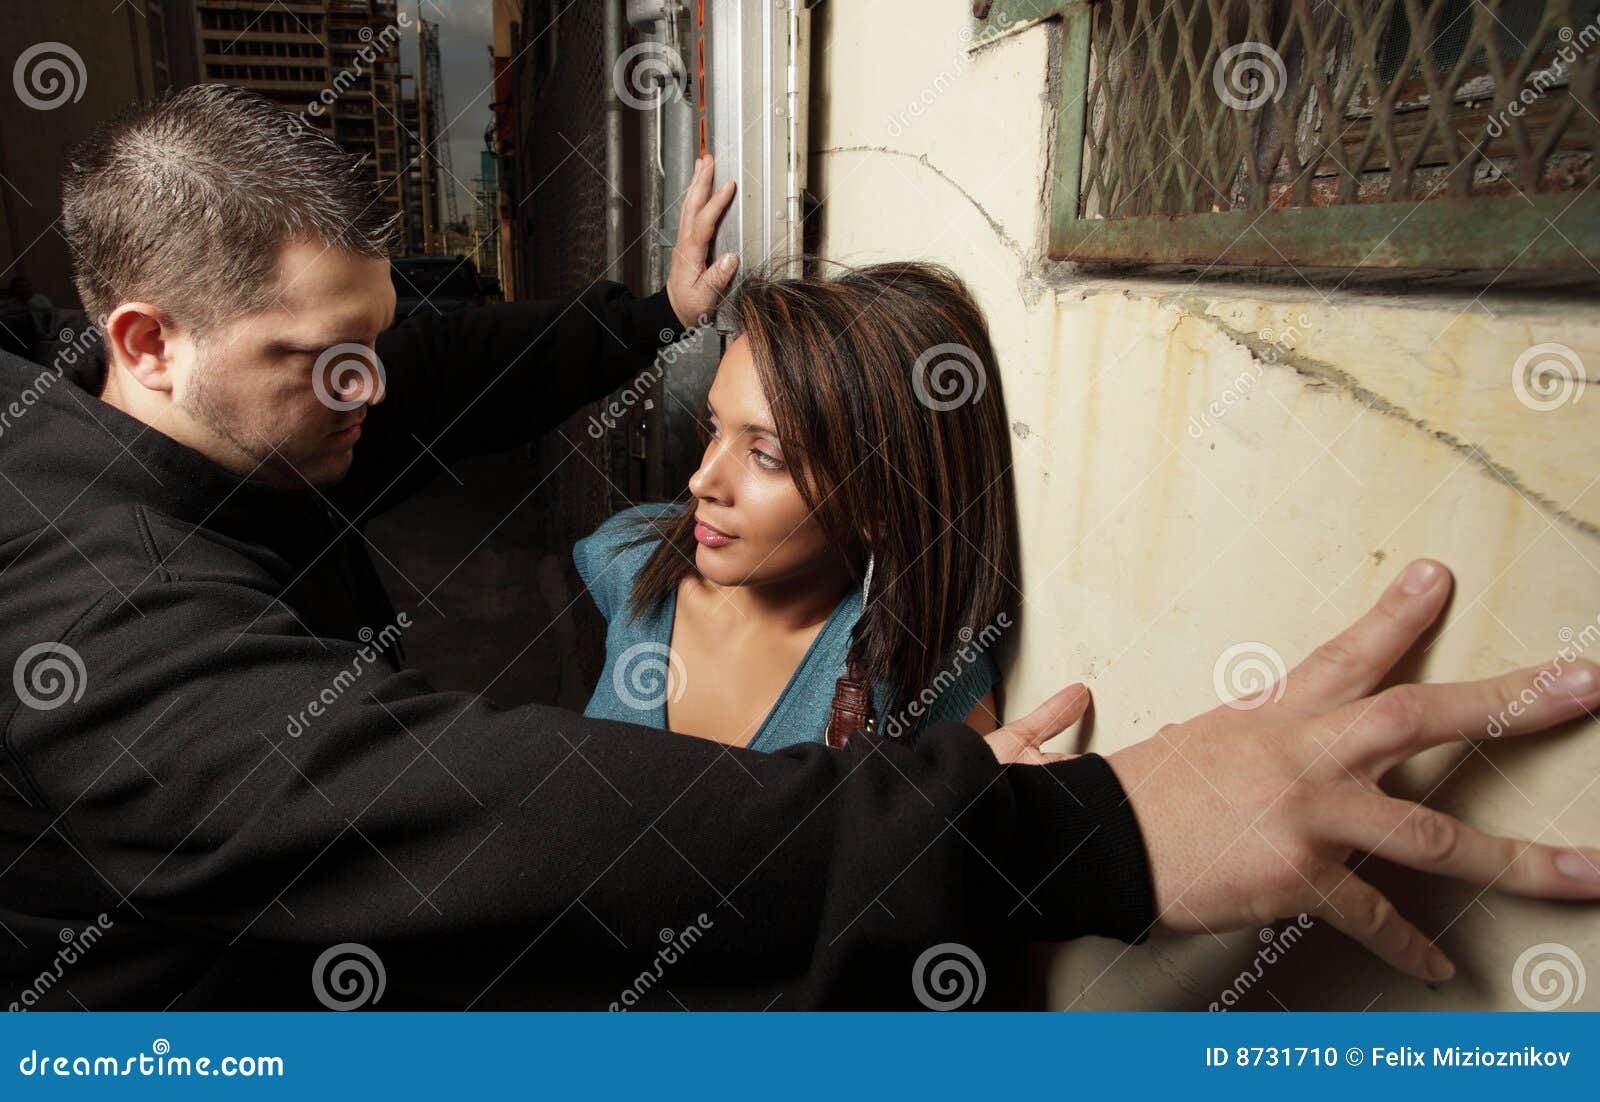 man blocking woman